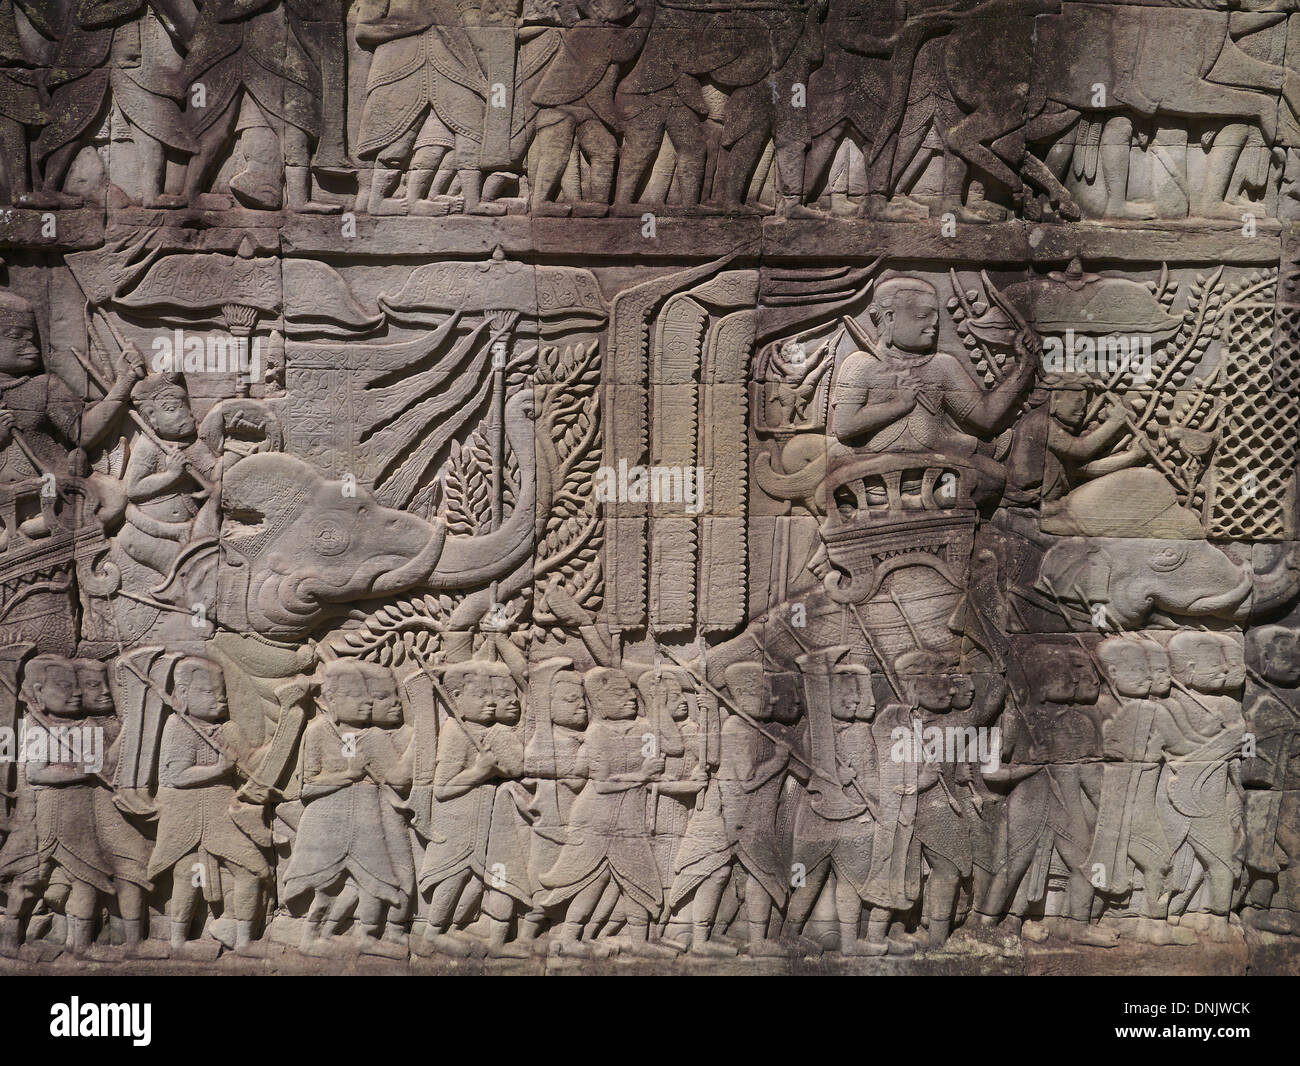 Cambogia Angkor Thom parte di Angkor Wat tempio complesso. Bassorilievo della vita quotidiana nel XII secolo Foto Stock